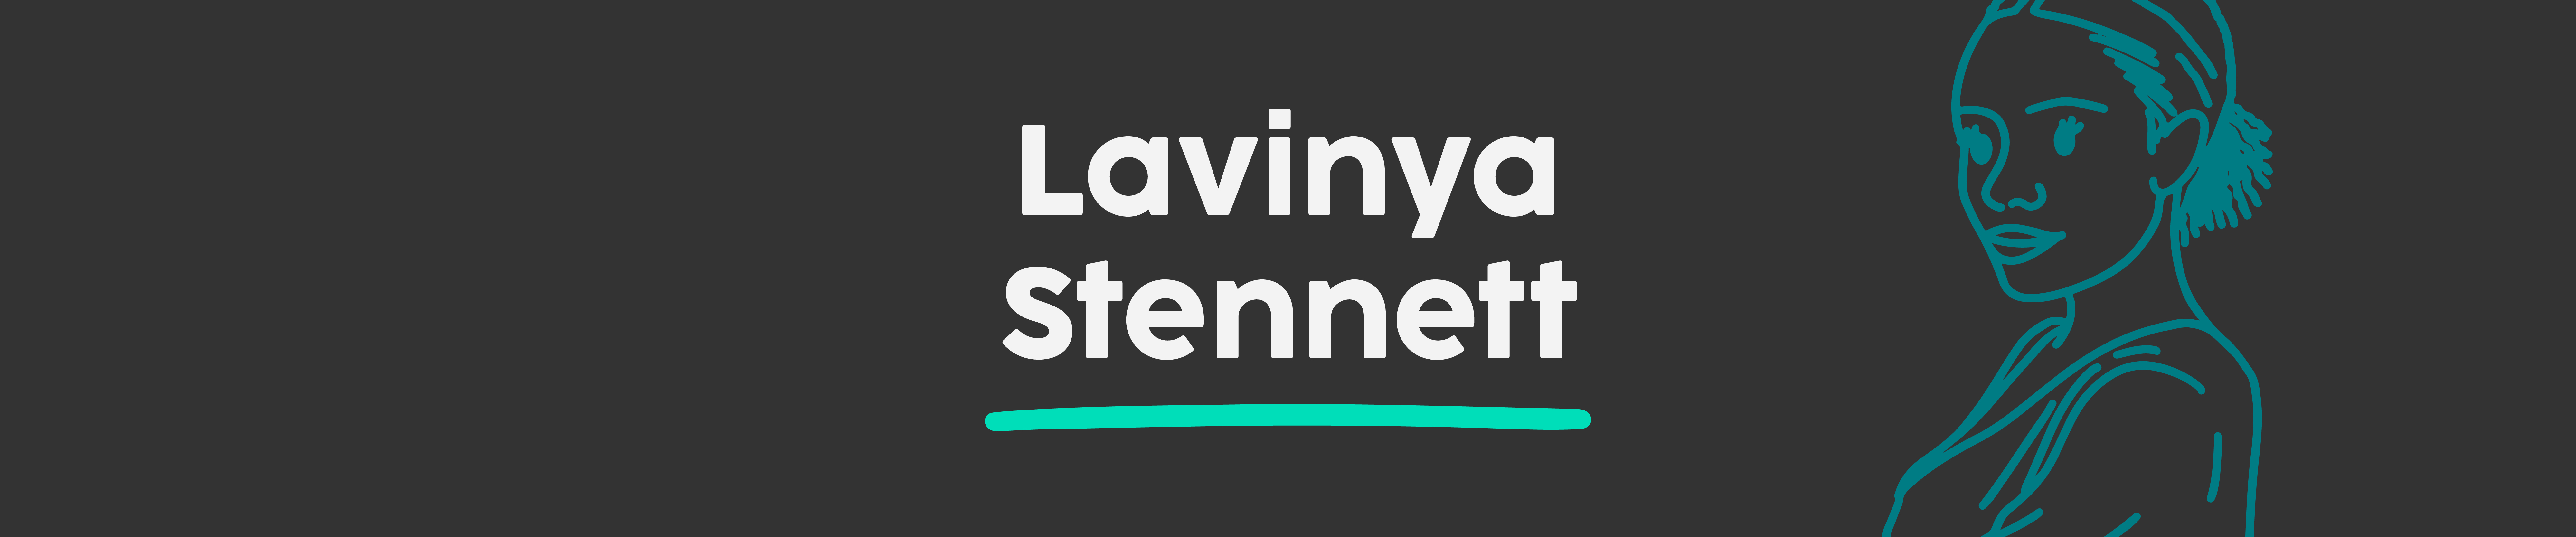 Lavinya Stennet